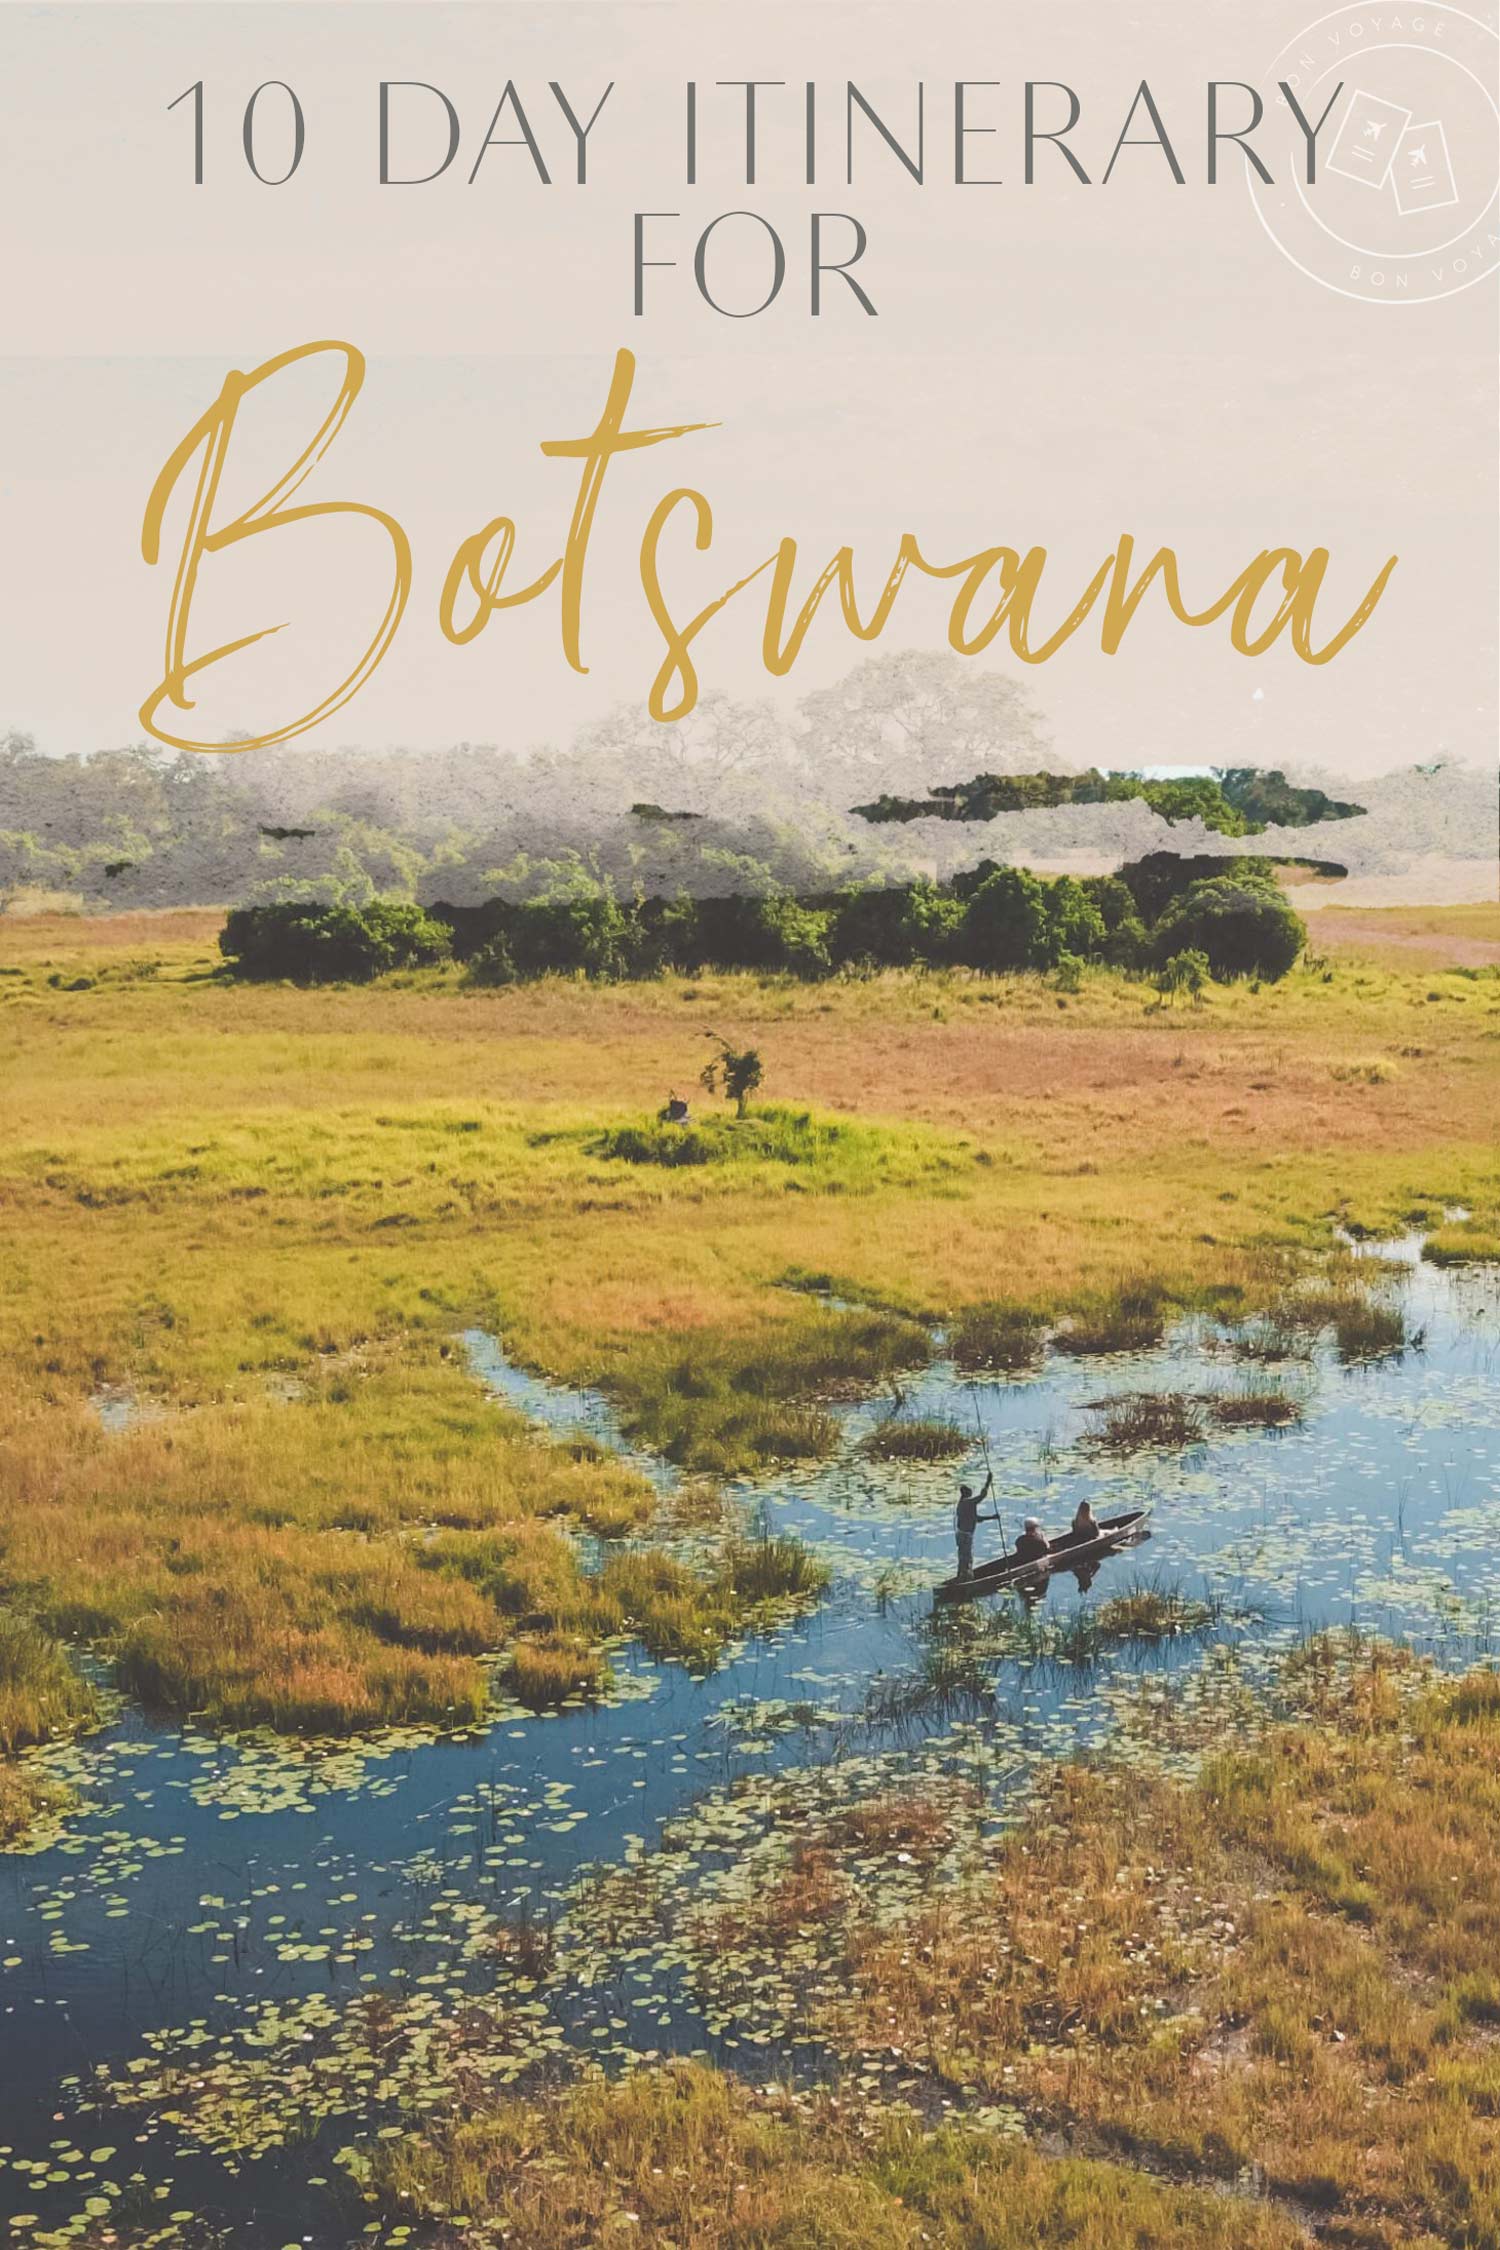 10 day itinerary for botswana